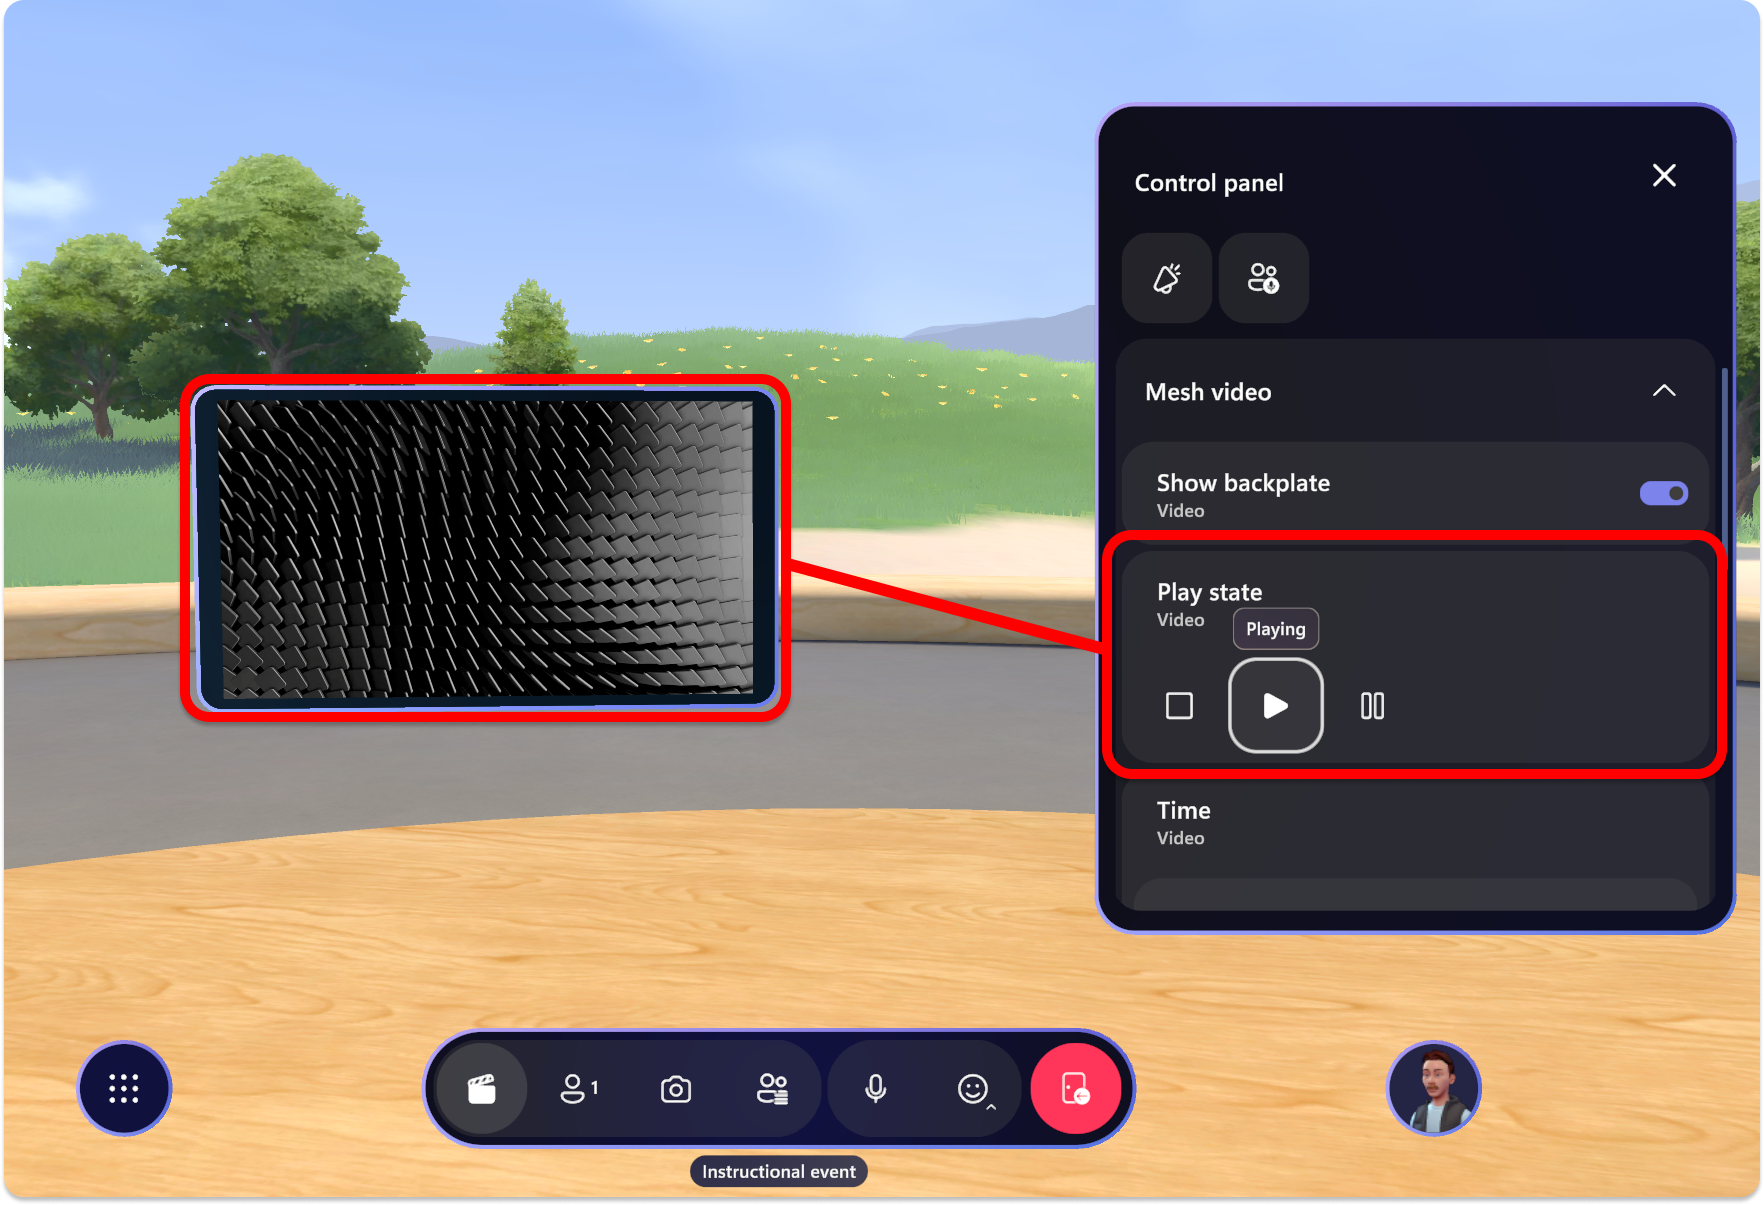 Snímek obrazovky s aplikací Mesh, ovládacím panelem přehrávaným objektem videa